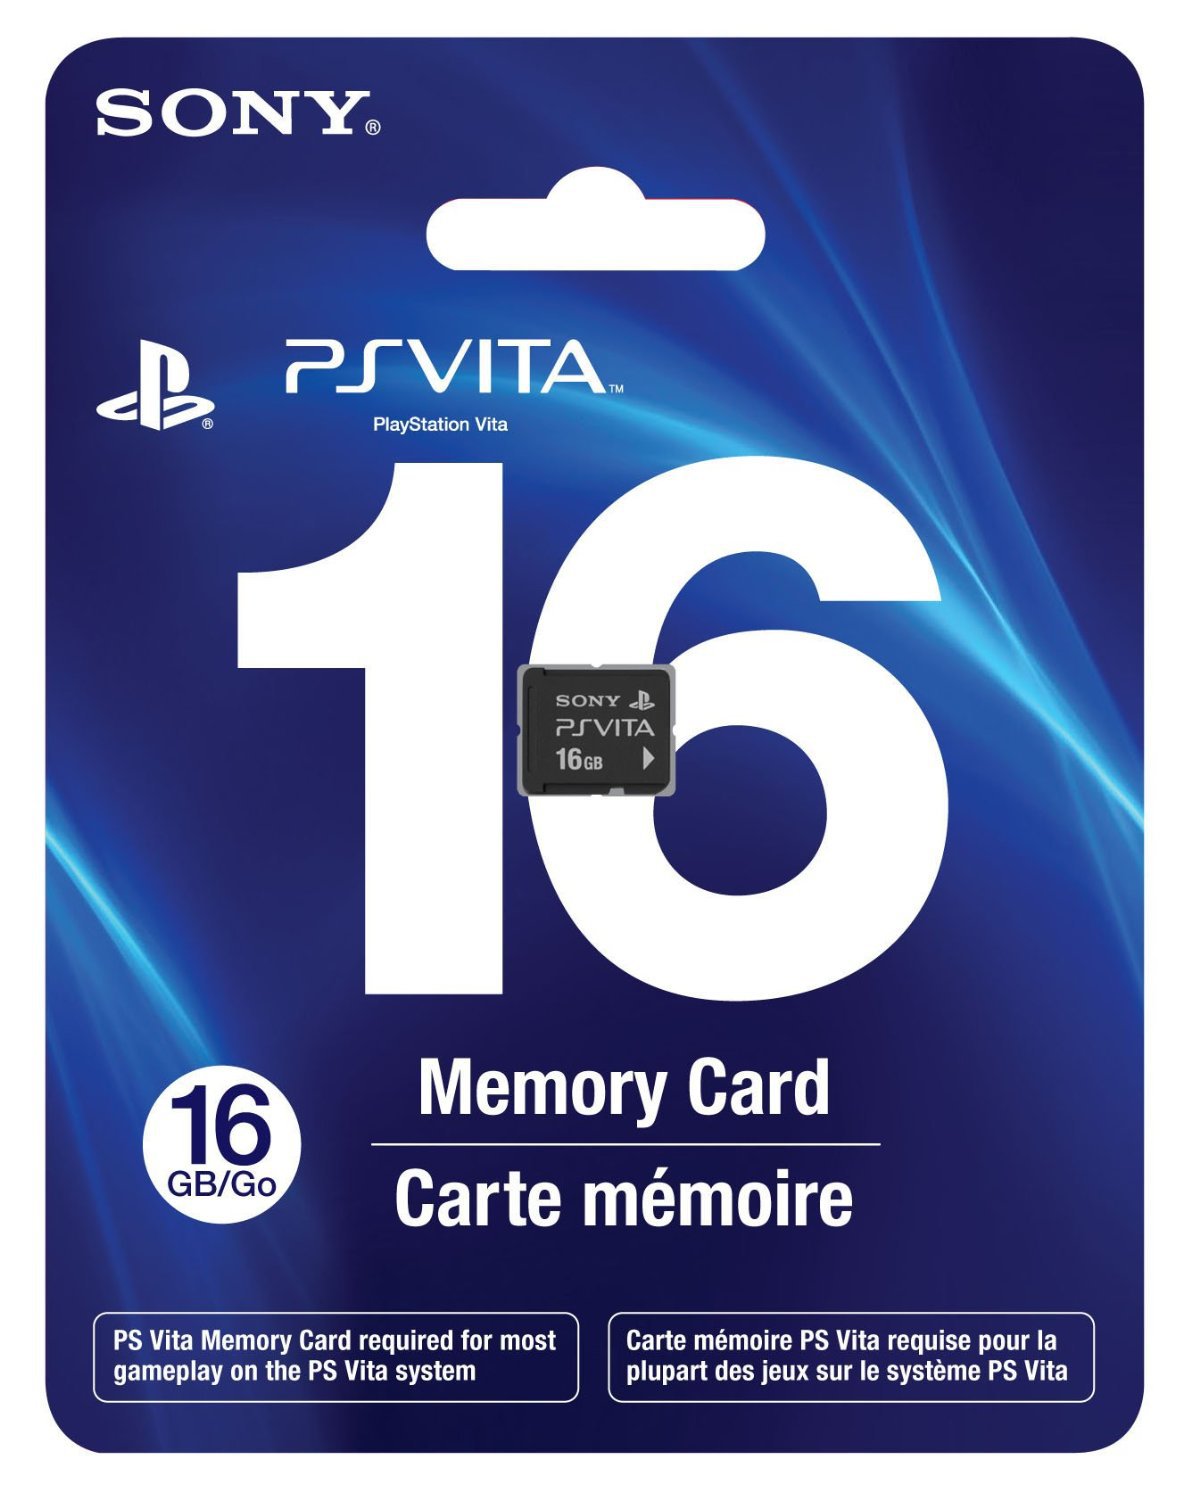 16 GB PS Vita Memory Card